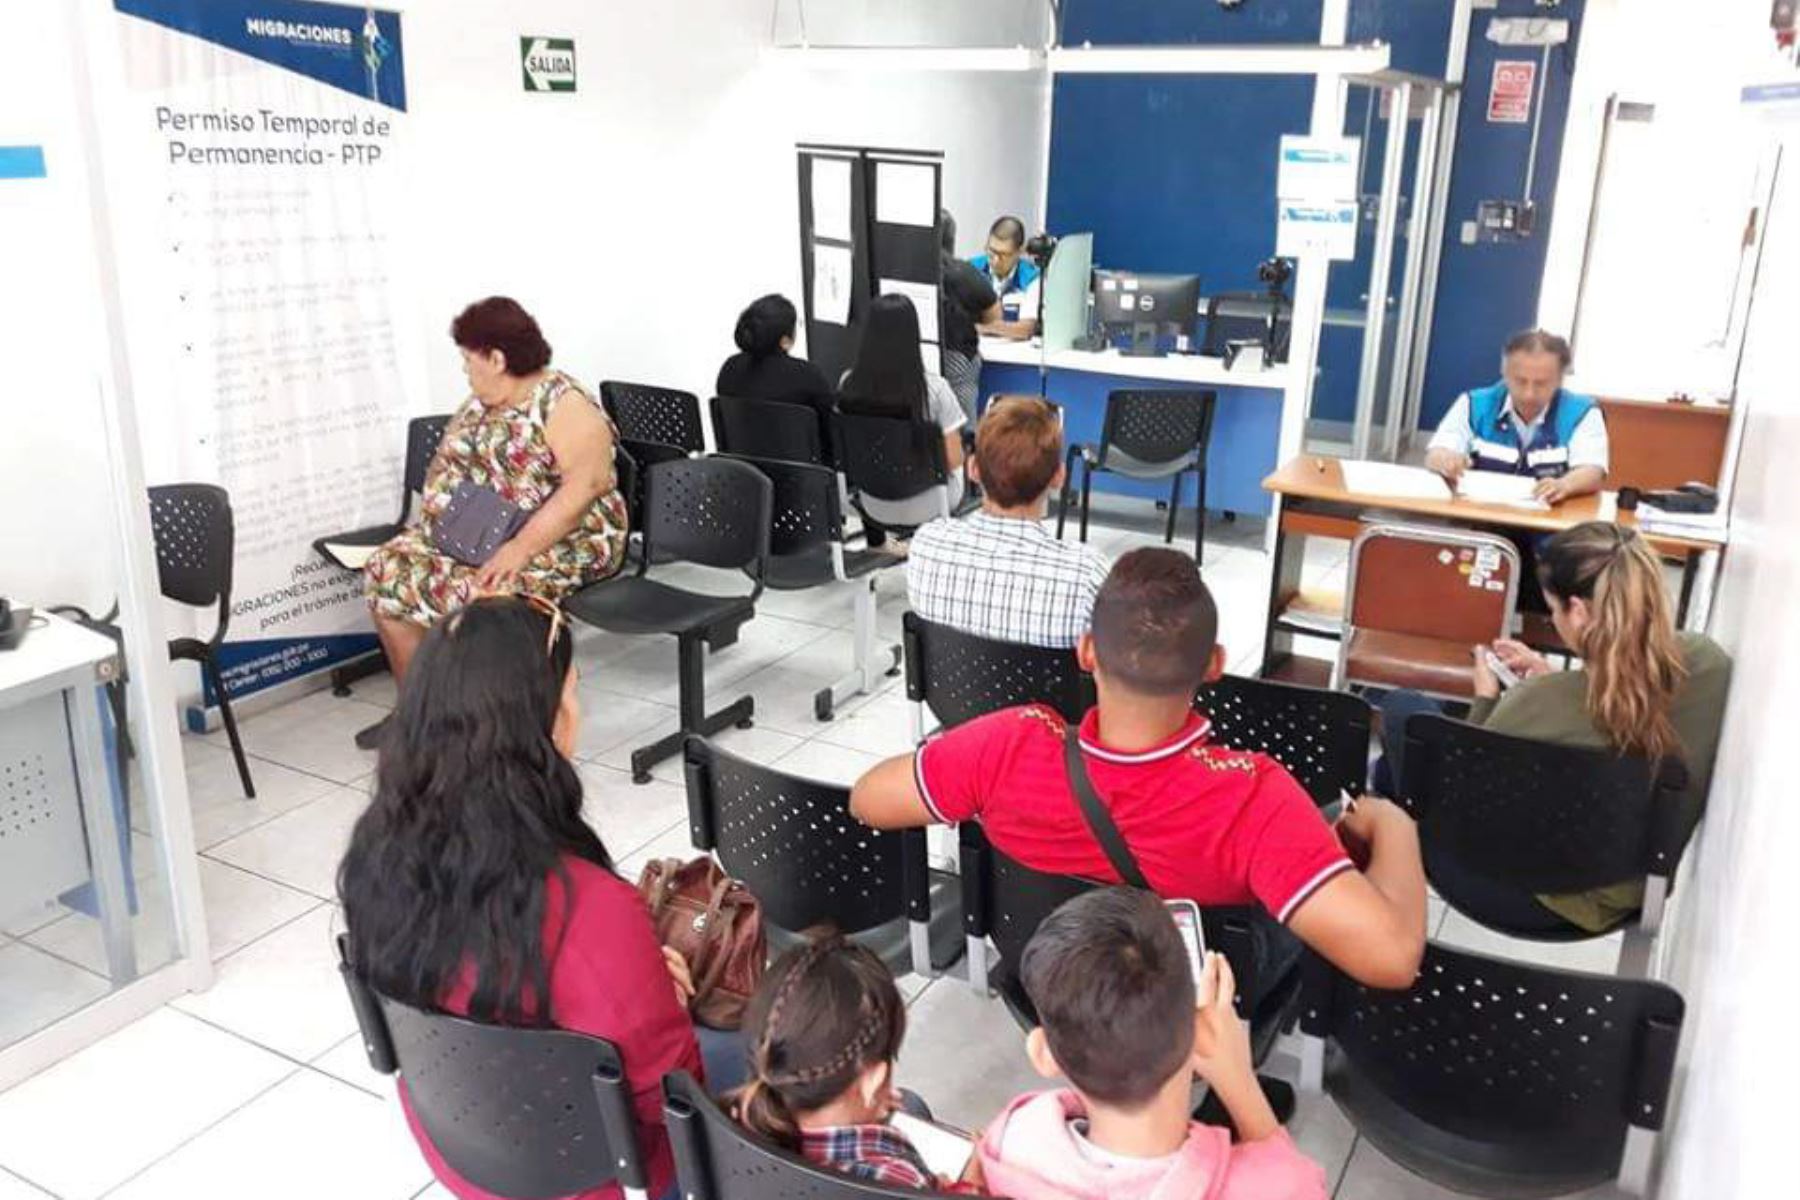 Oficina de Migraciones en Chiclayo emitió 3,500 permisos temporales de permanencia. ANDINA